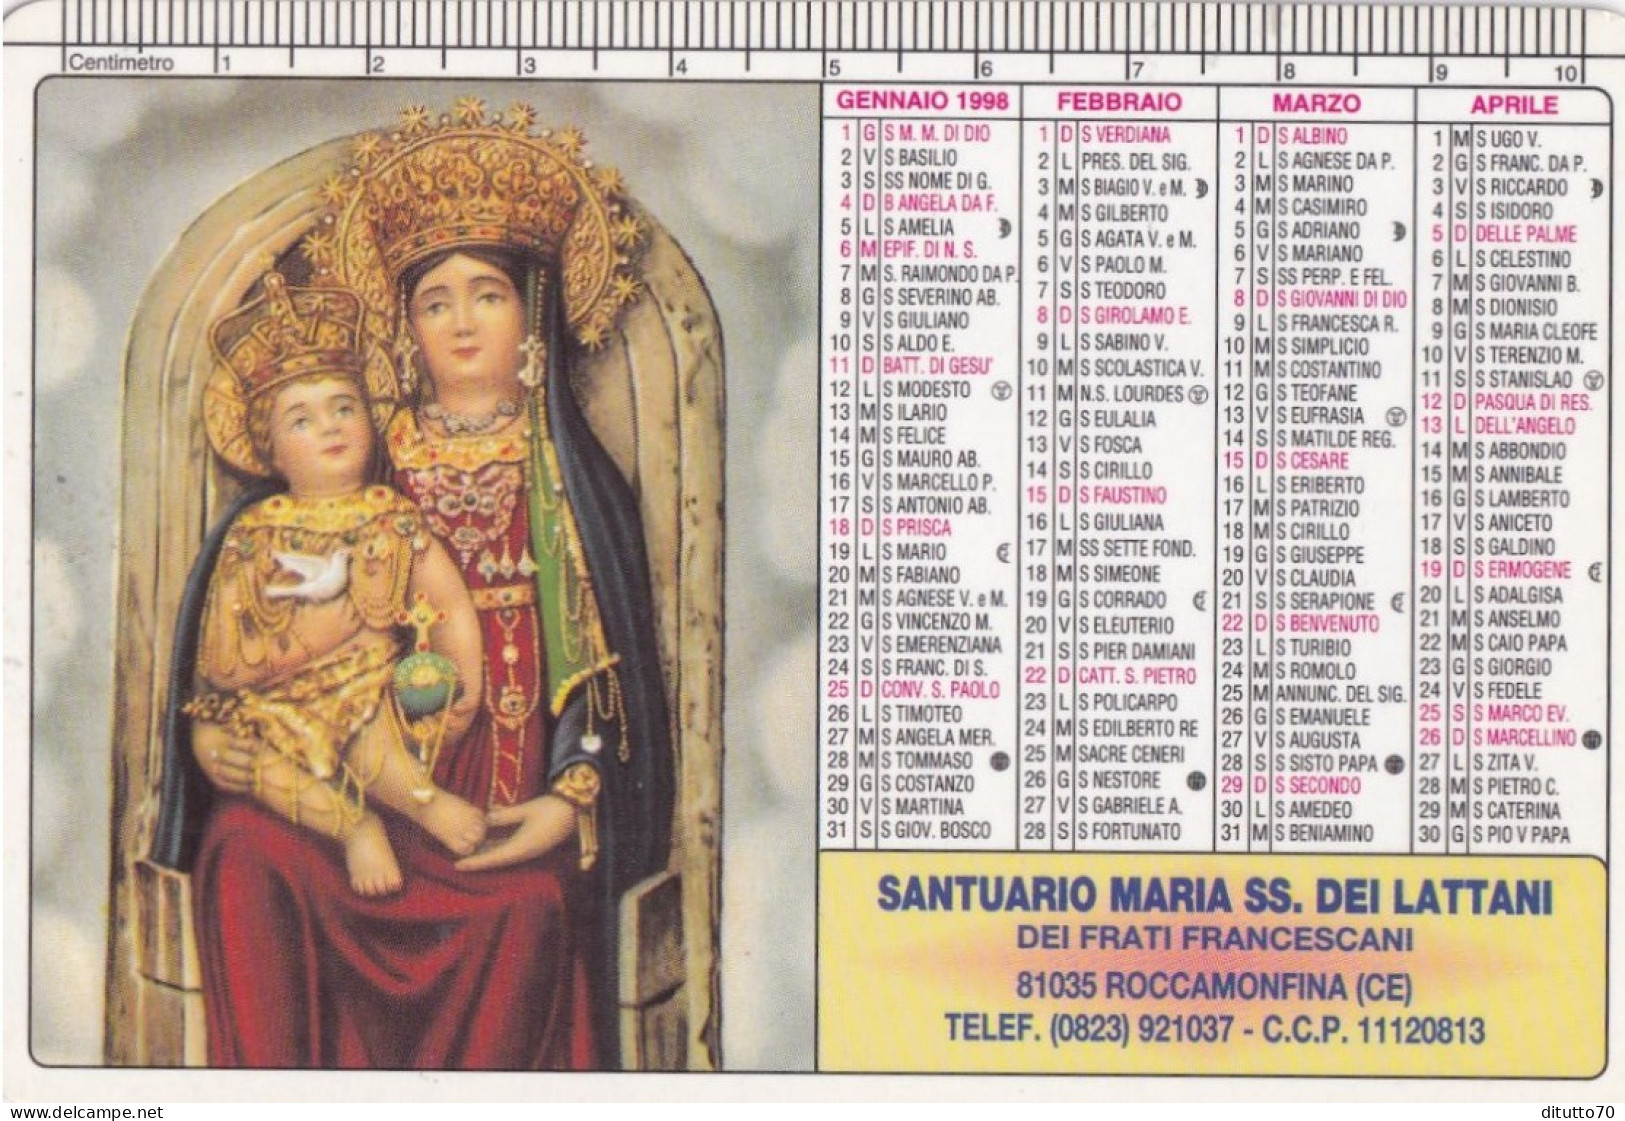 Calendarietto - Santuario Maria Ss.dei Lattani Dei Frati Francescani - Roccamonfina - Caserta - Anno 1998 - Formato Piccolo : 1991-00